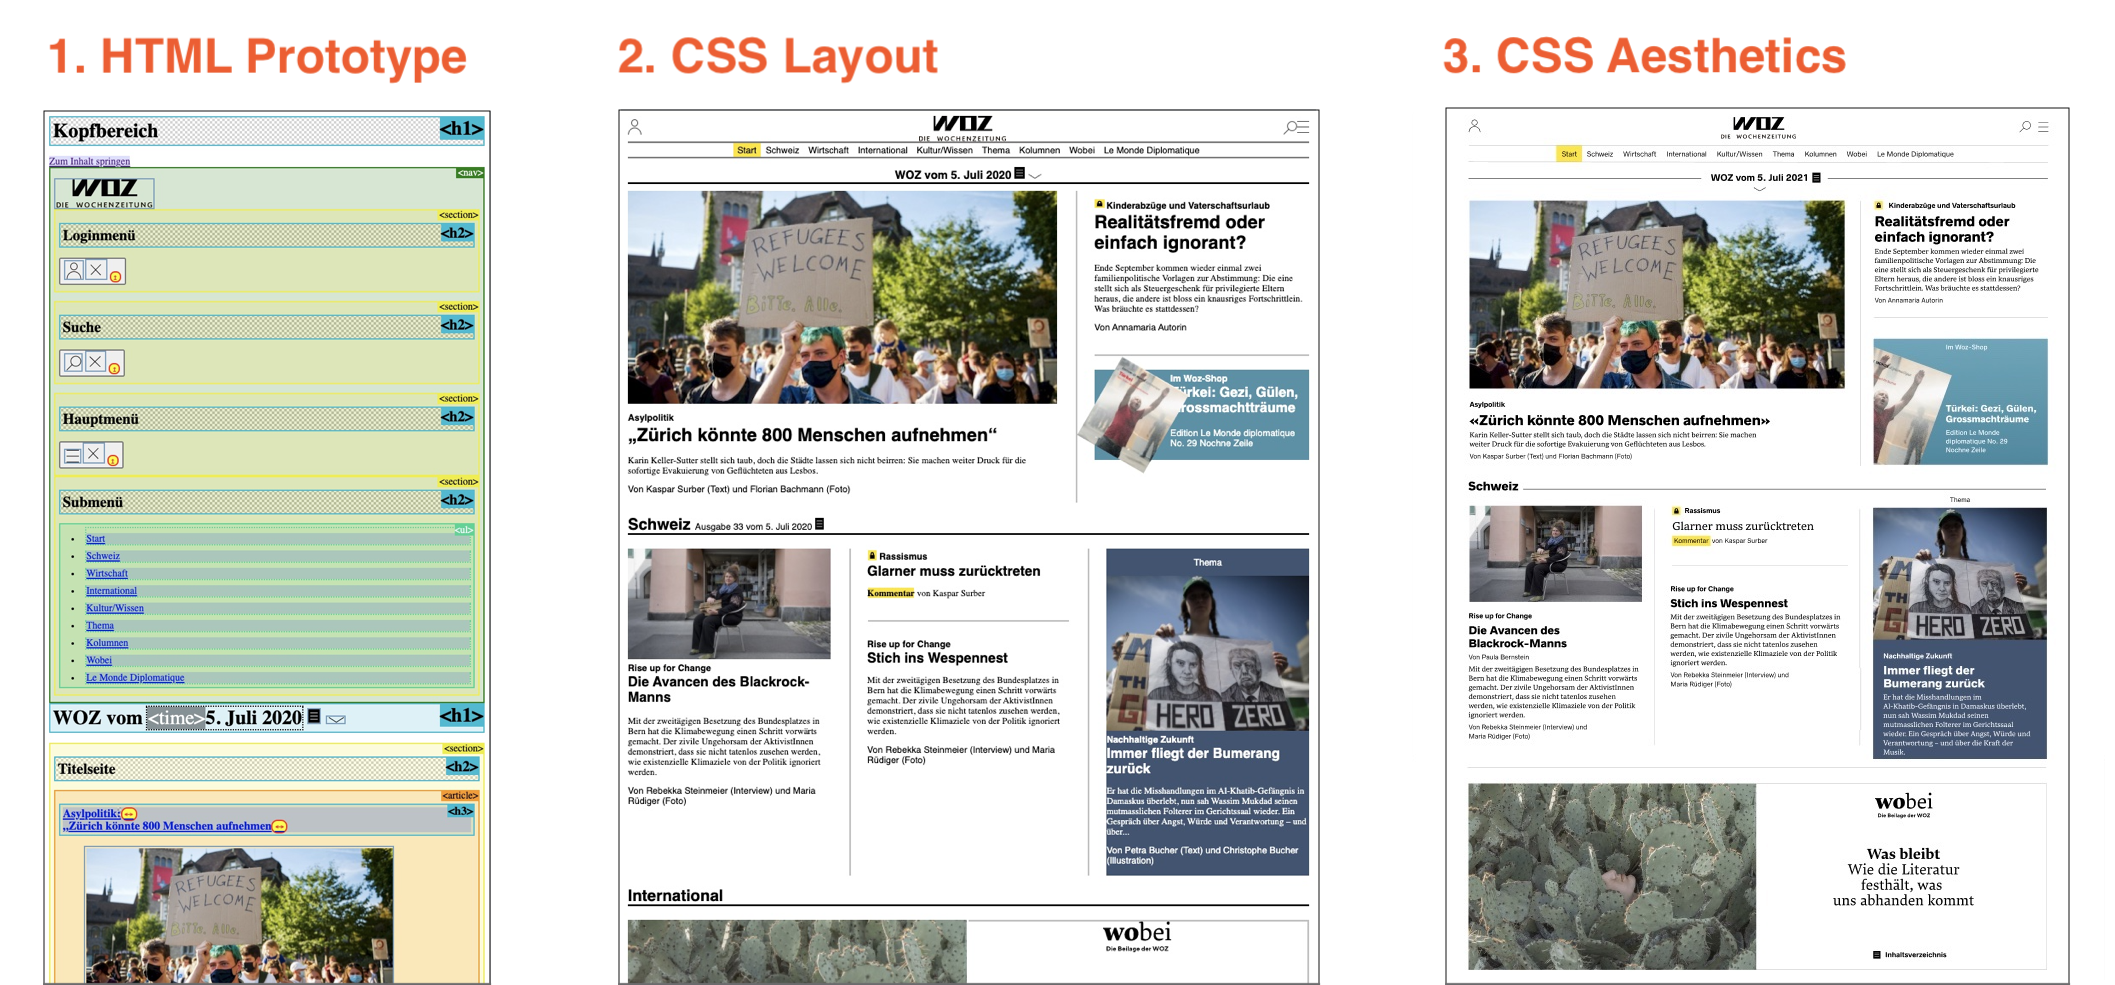 Der HTML-Prototyp, der Inhalt mit CSS-Layout und der Inhalt nach Hinzufügen der CSS-Ästhetik.